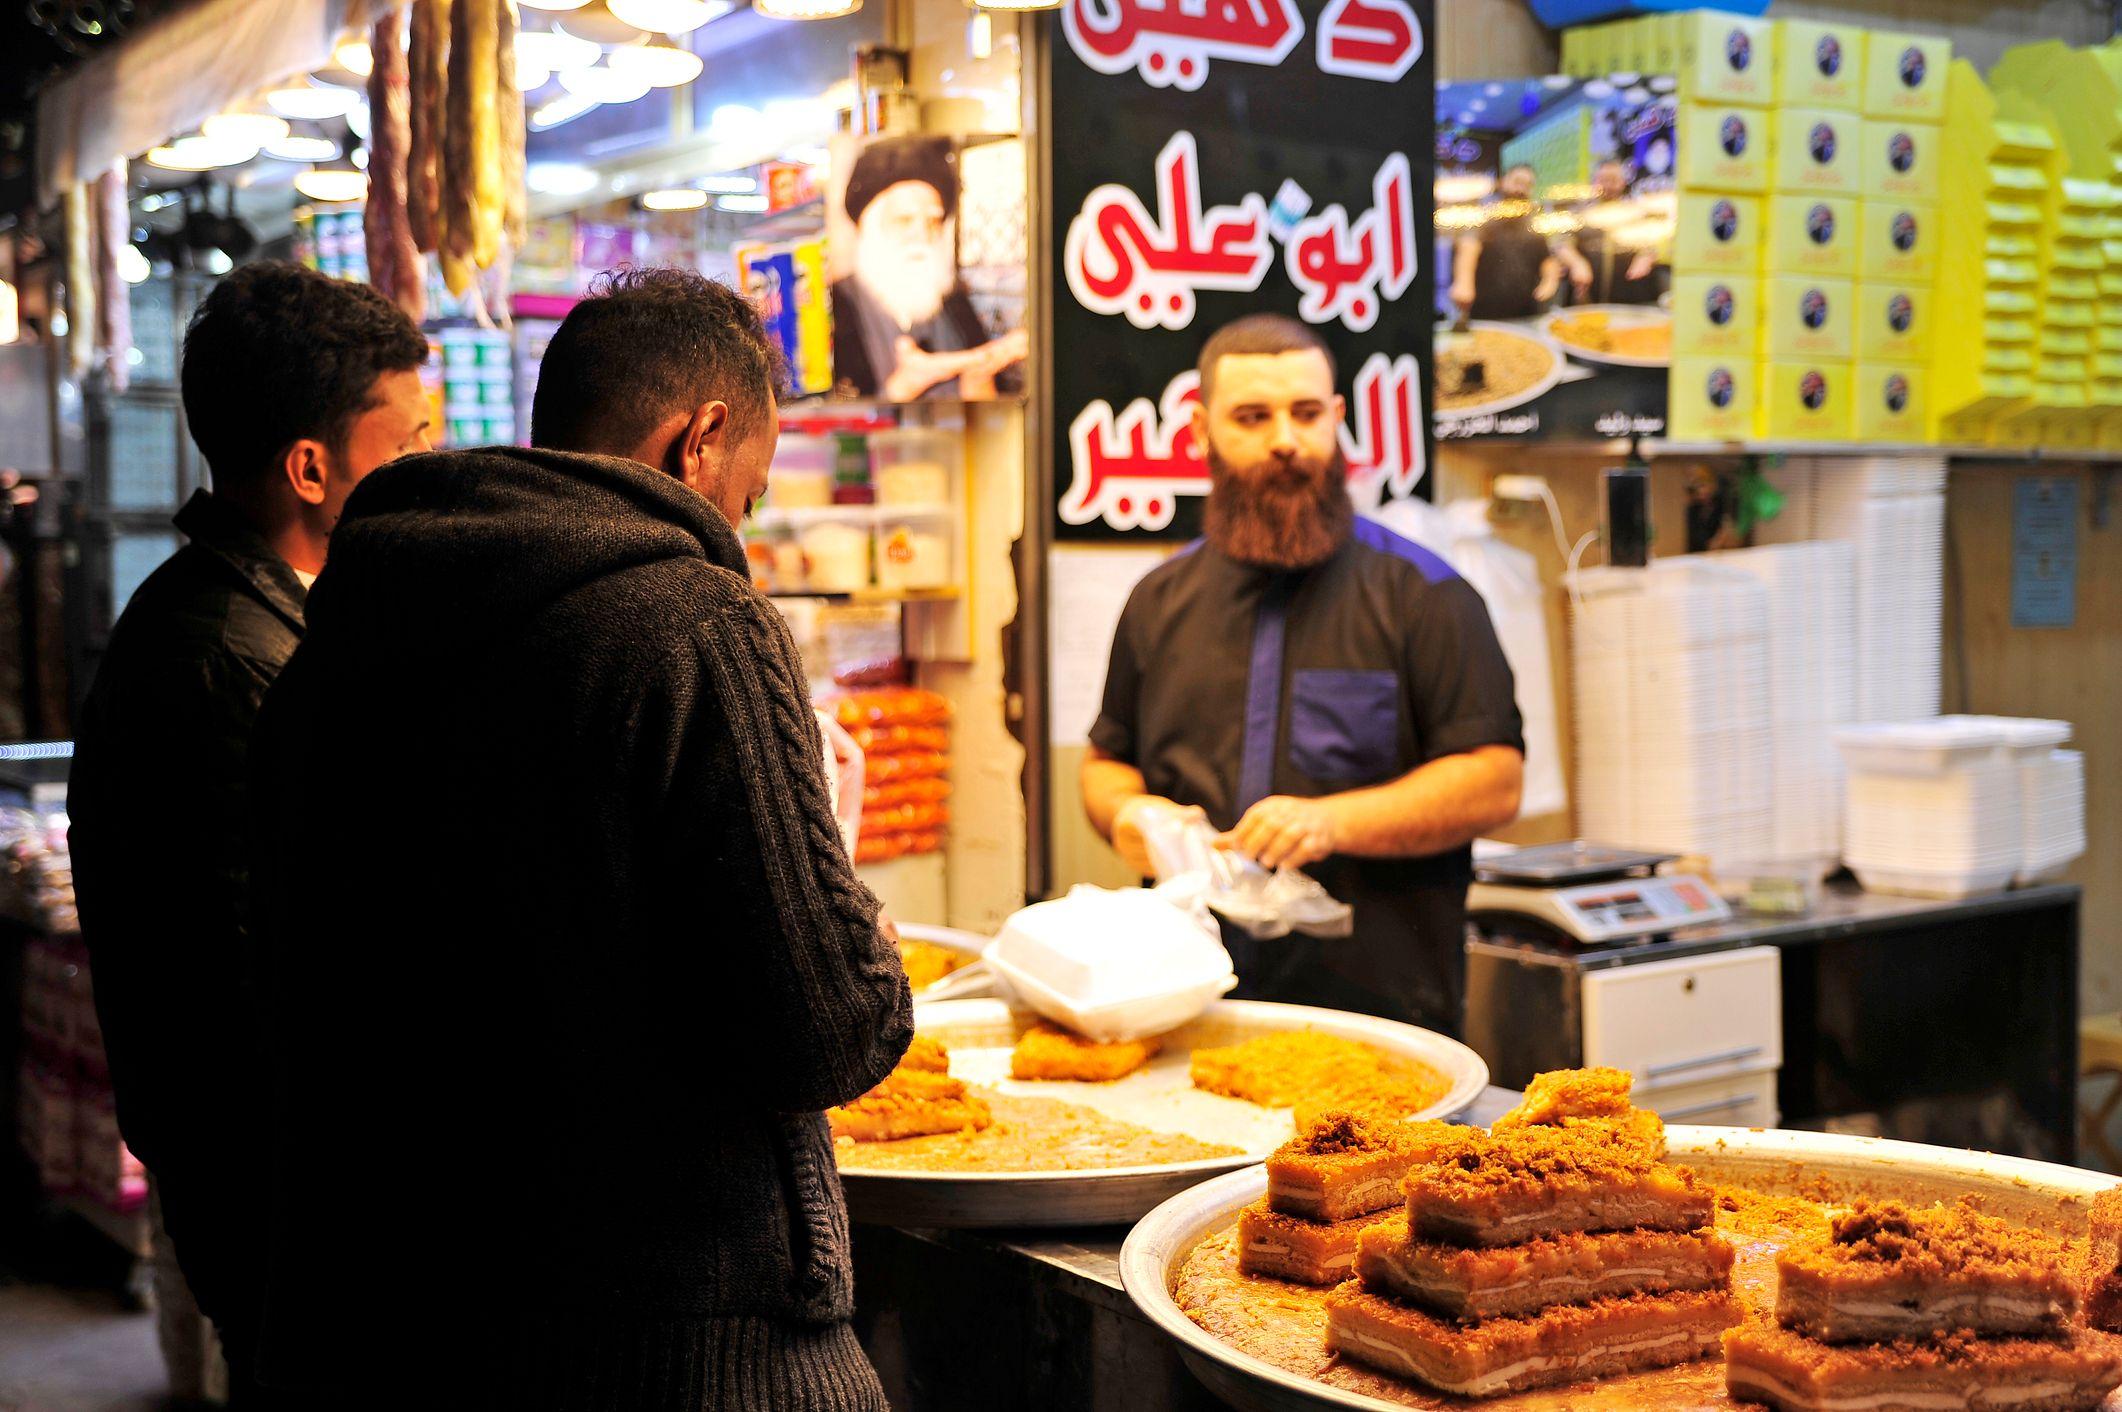 بائع حلوى يبيع حلوى موضوعة في في وعاء كبير في أحد المتاجر في ممحافظة النجف العراقية